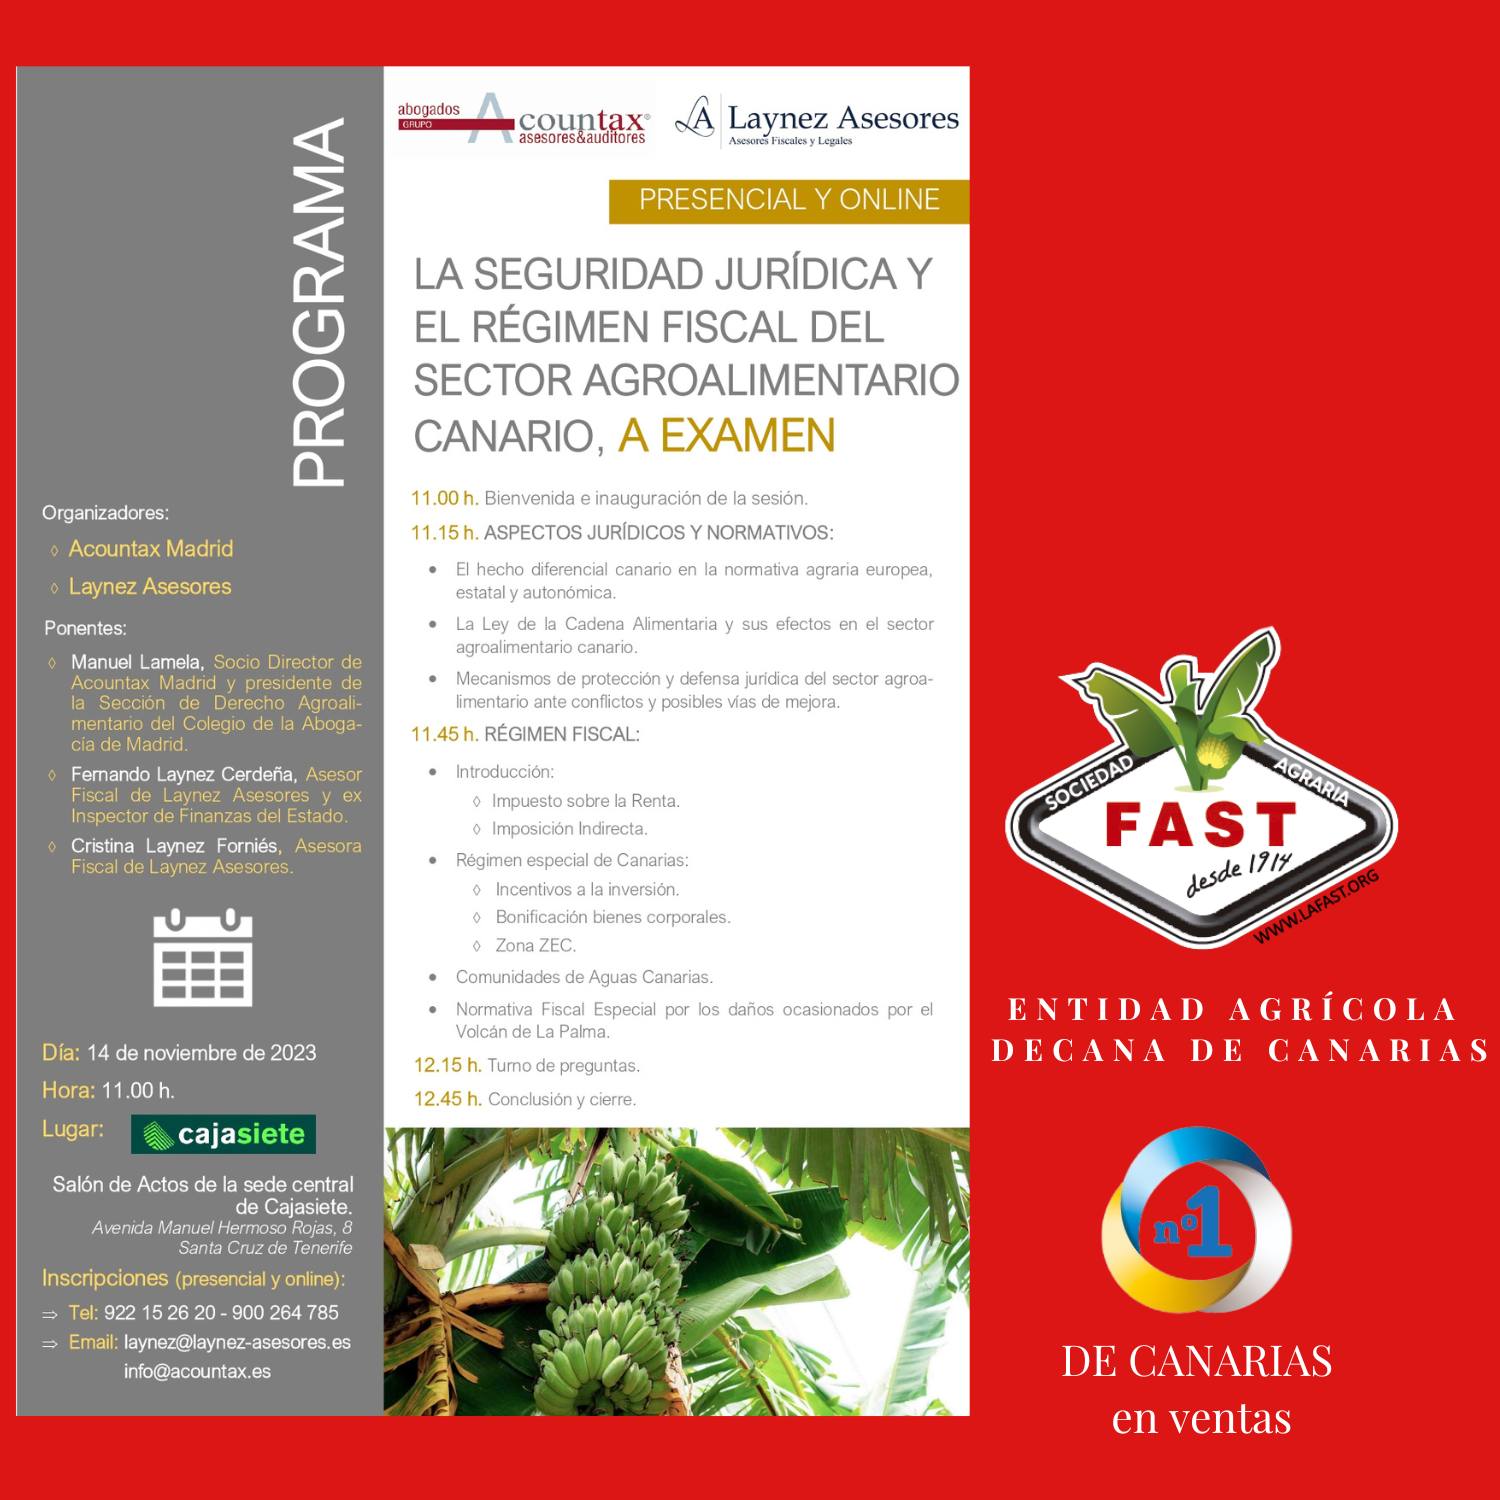 jornada formativa en Seguridad Jurídica y Régimen Fiscal del Sector Agroalimentario Canario, a examen